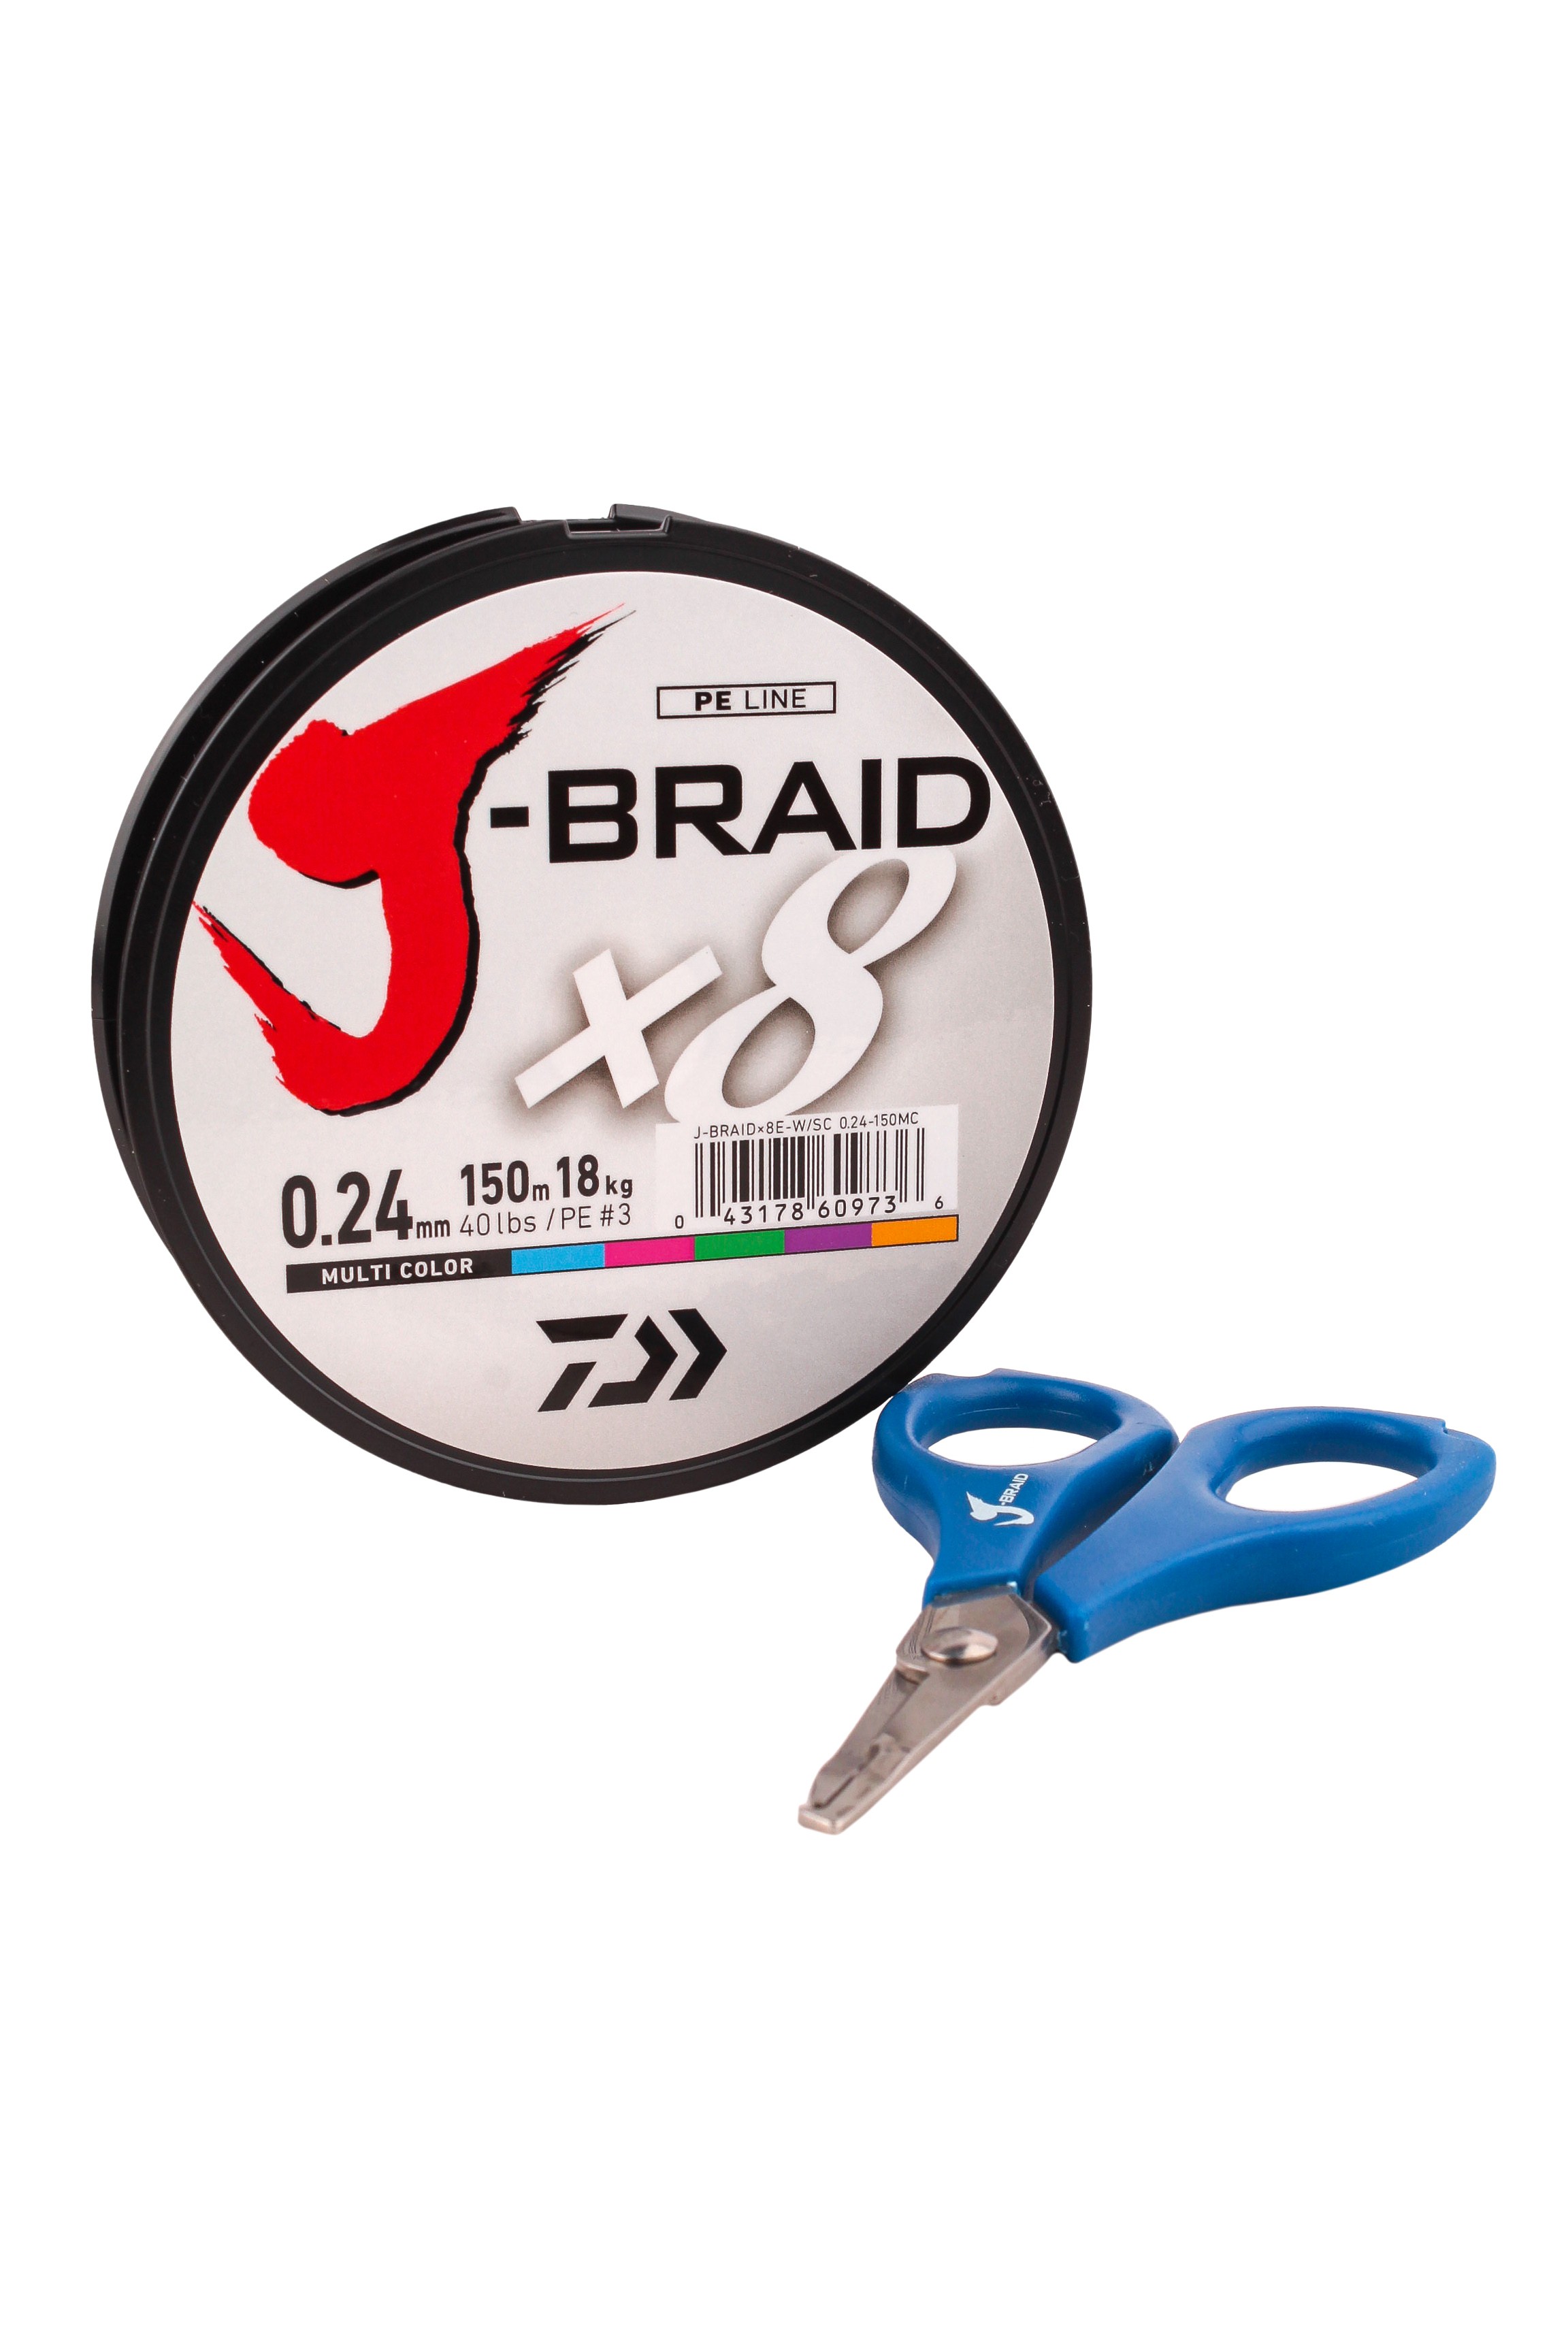 Шнур Daiwa J-Braid X8E-W/SC 0,24мм 150м multicolor + ножницы - фото 1